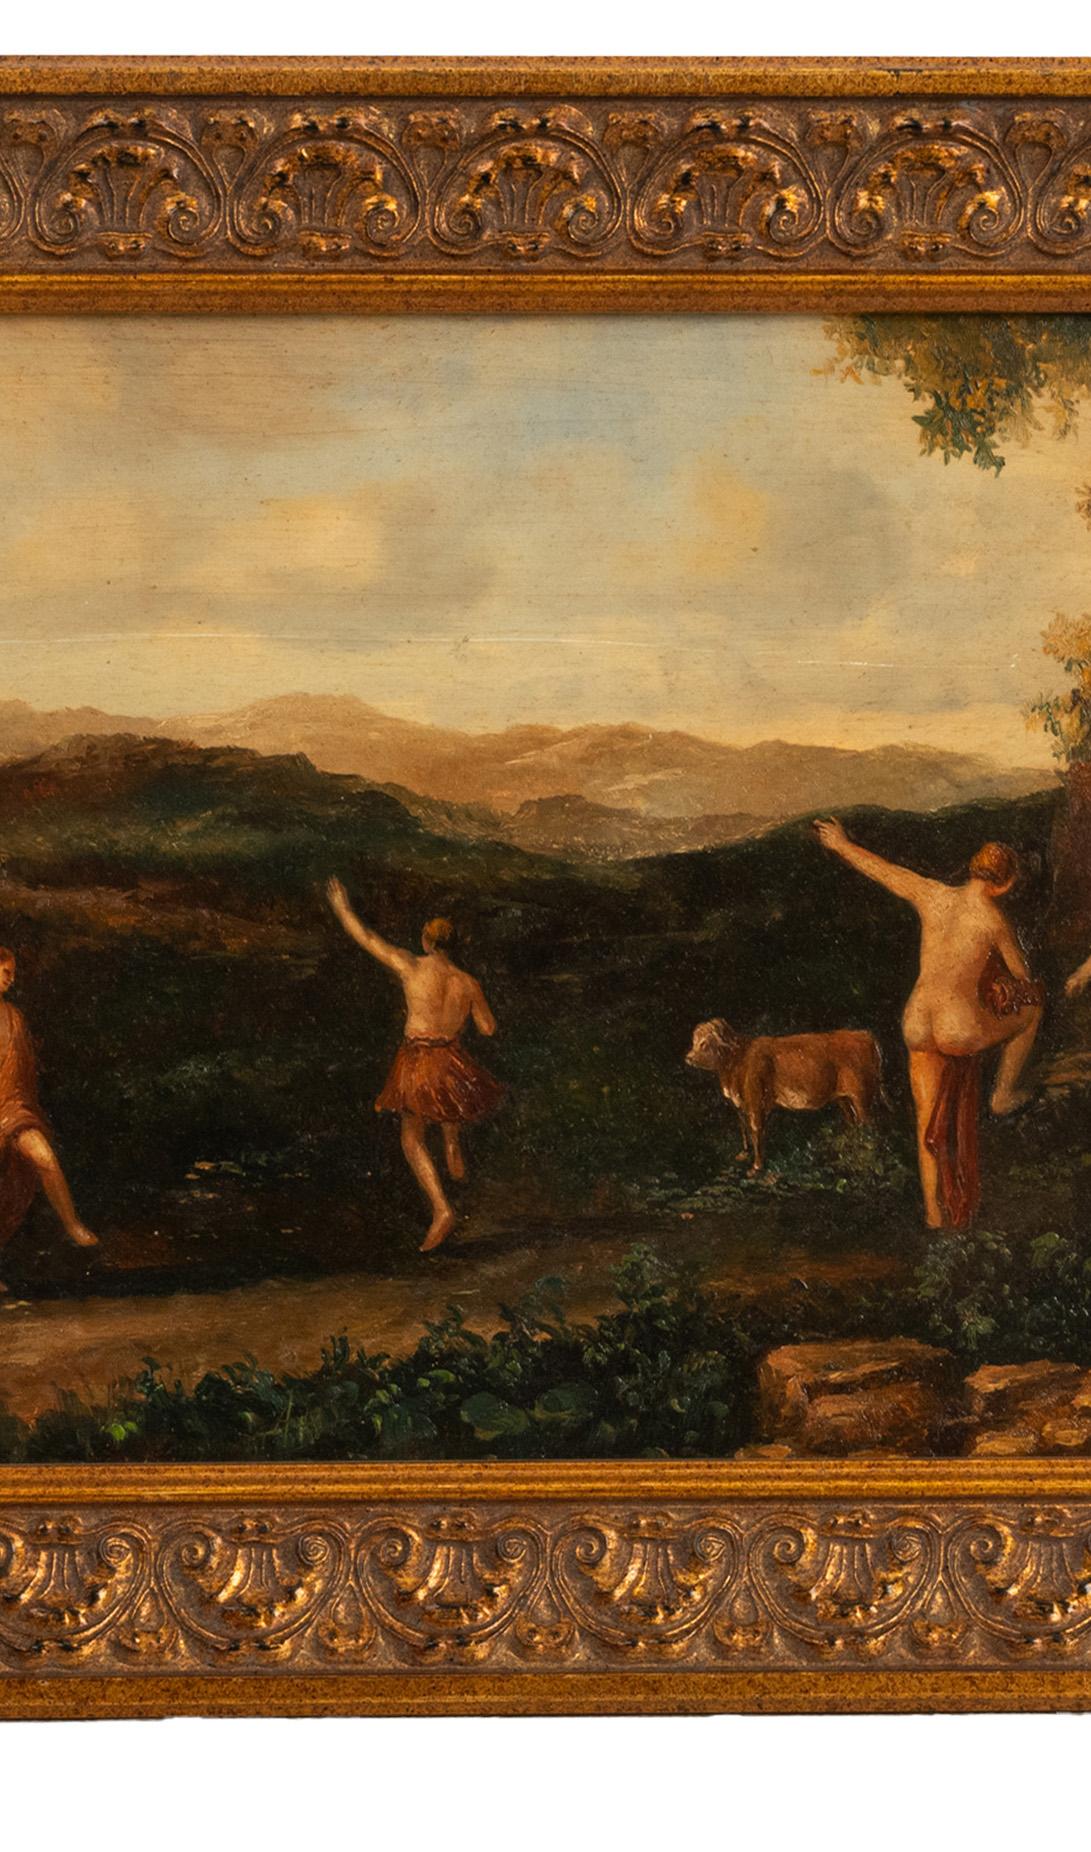 Ein gutes antikes holländisches/flämisches Ölgemälde auf Tafel, nach Cornelis van Poelenburgh, um 1850.
Das Gemälde zeigt eine Reihe von nackten und teilweise bekleideten Nymphen, die in einer bukolischen Landschaft tanzen, mit einer Kuh im